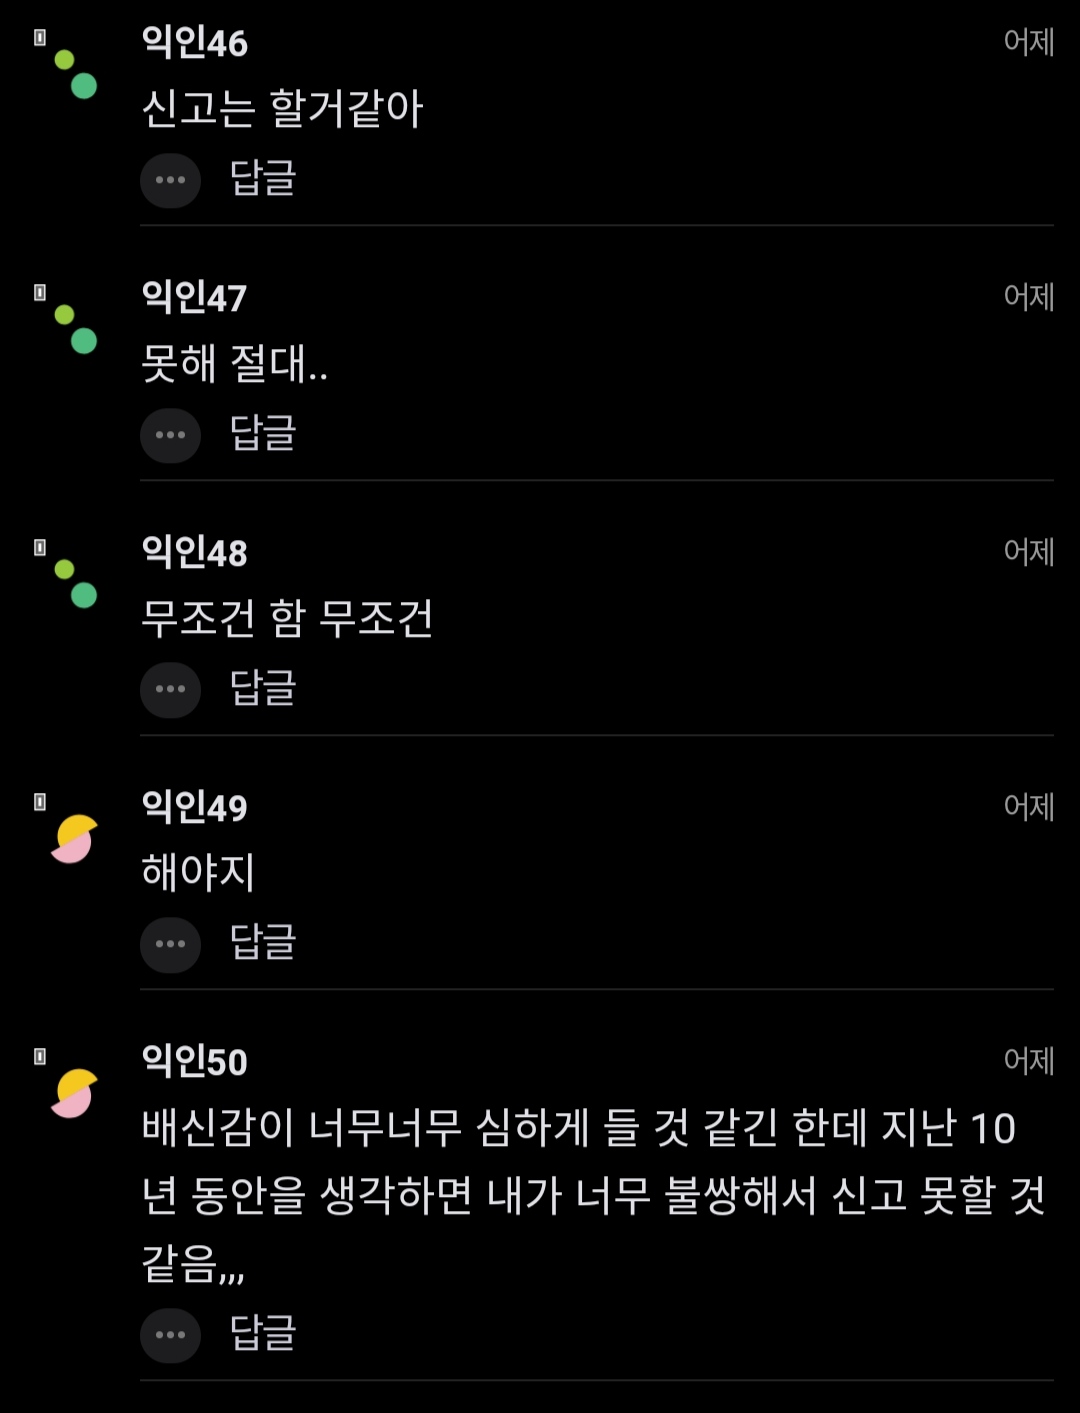 "10년친구가 북한 간첩이면 신고함?".jpg